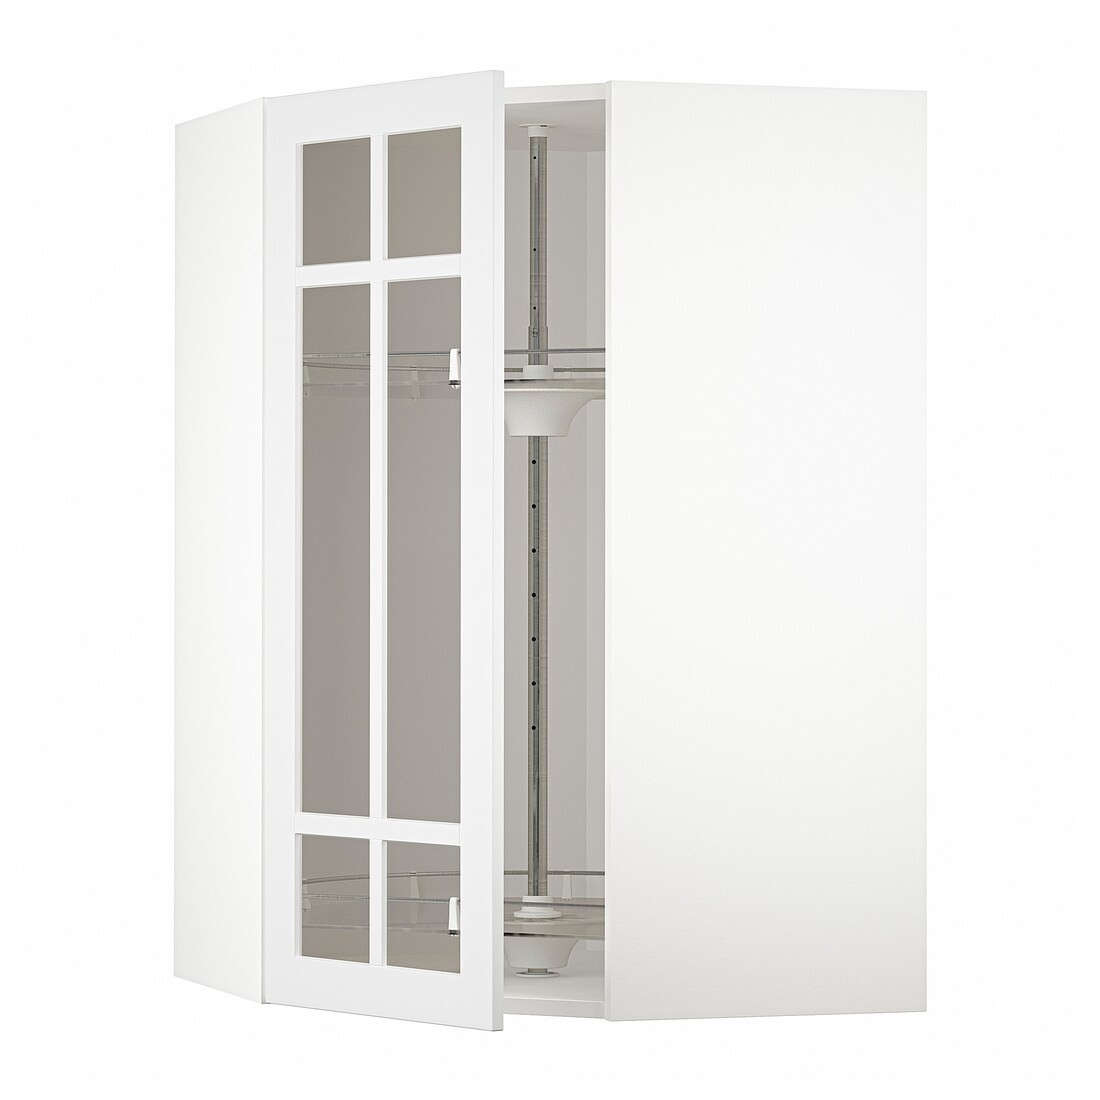 IKEA METOD МЕТОД Угловой настенный шкаф с каруселью / стеклянная дверь, белый / Stensund белый, 68x100 см 39409210 394.092.10